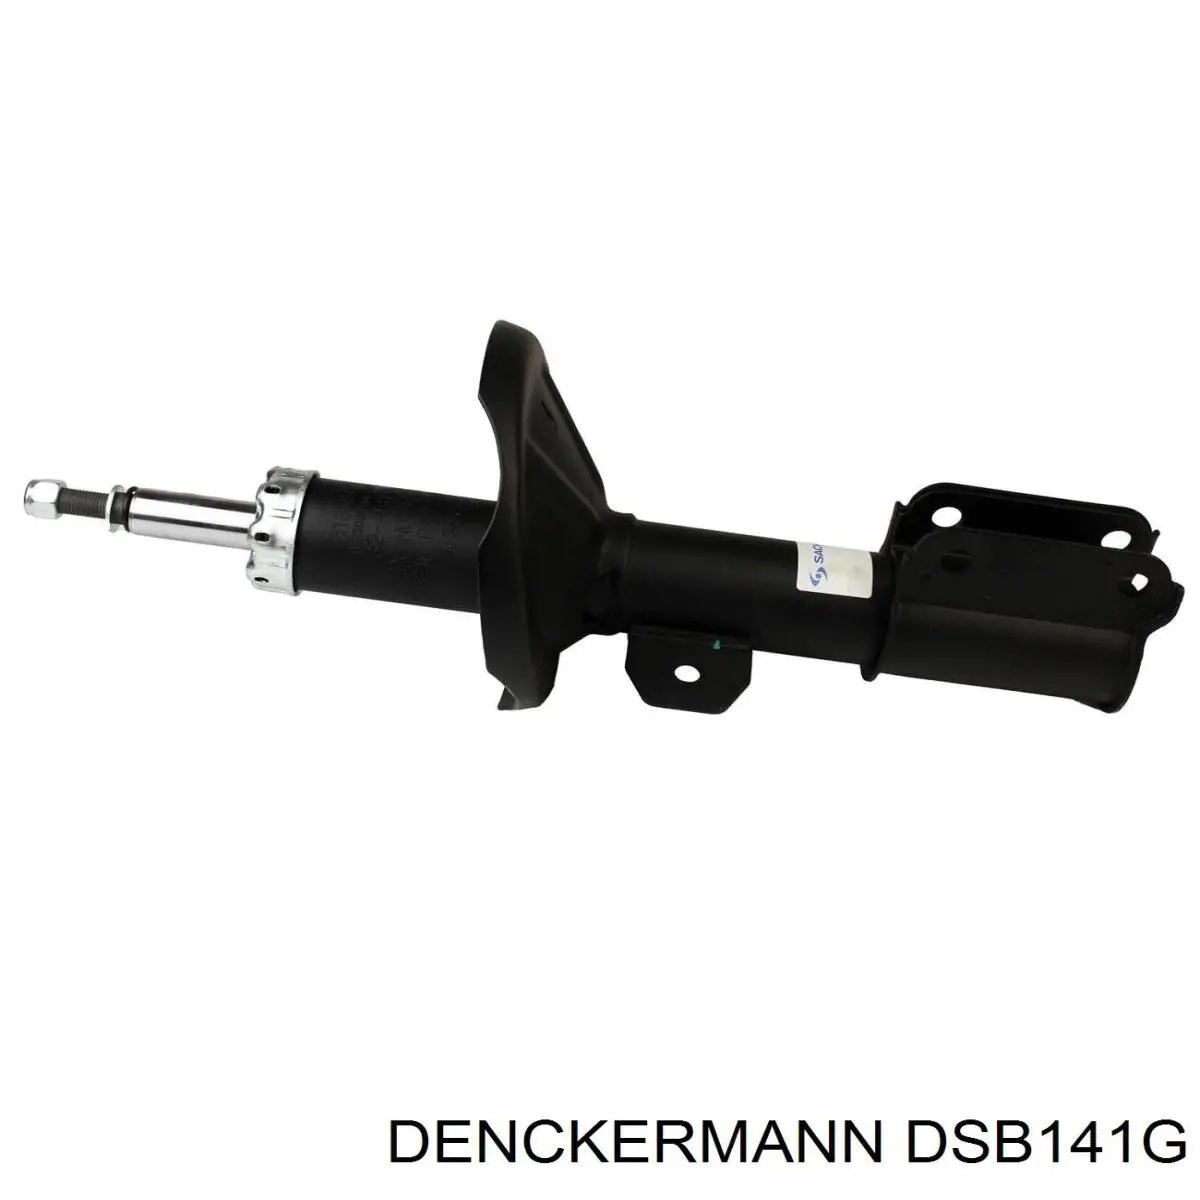 DSB141G Denckermann amortiguador trasero izquierdo